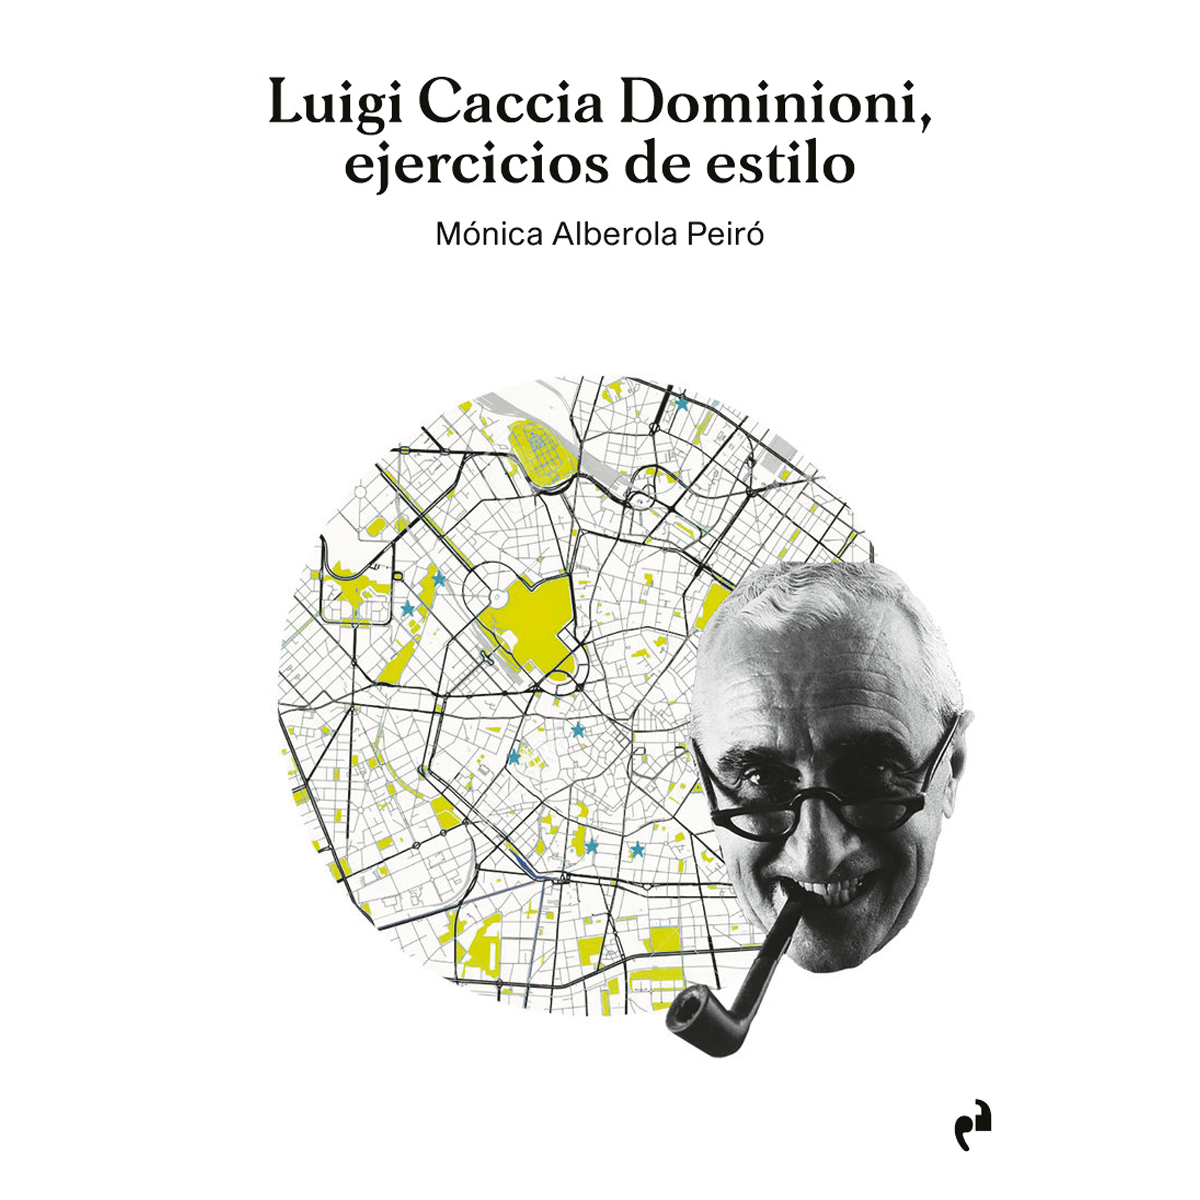 Luigi Caccia Dominioni, ejercicios de estilo